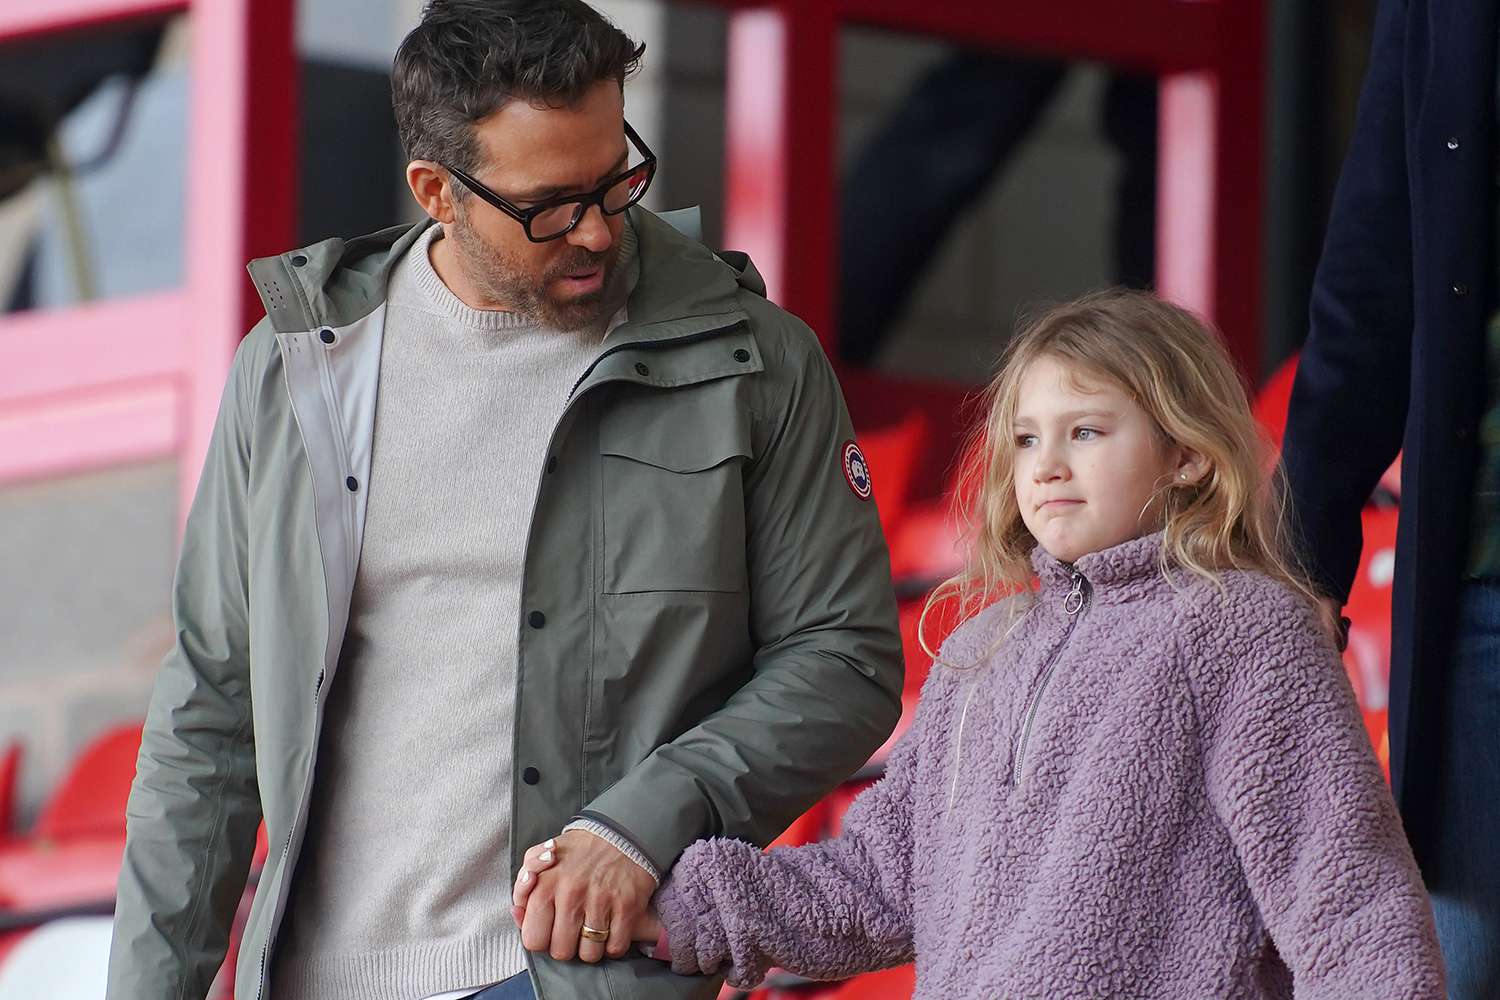 Con gái James, 8 tuổi của Ryan Reynolds, xuất hiện hiếm hoi trong trận đấu Wrexham cuối tuần với bố